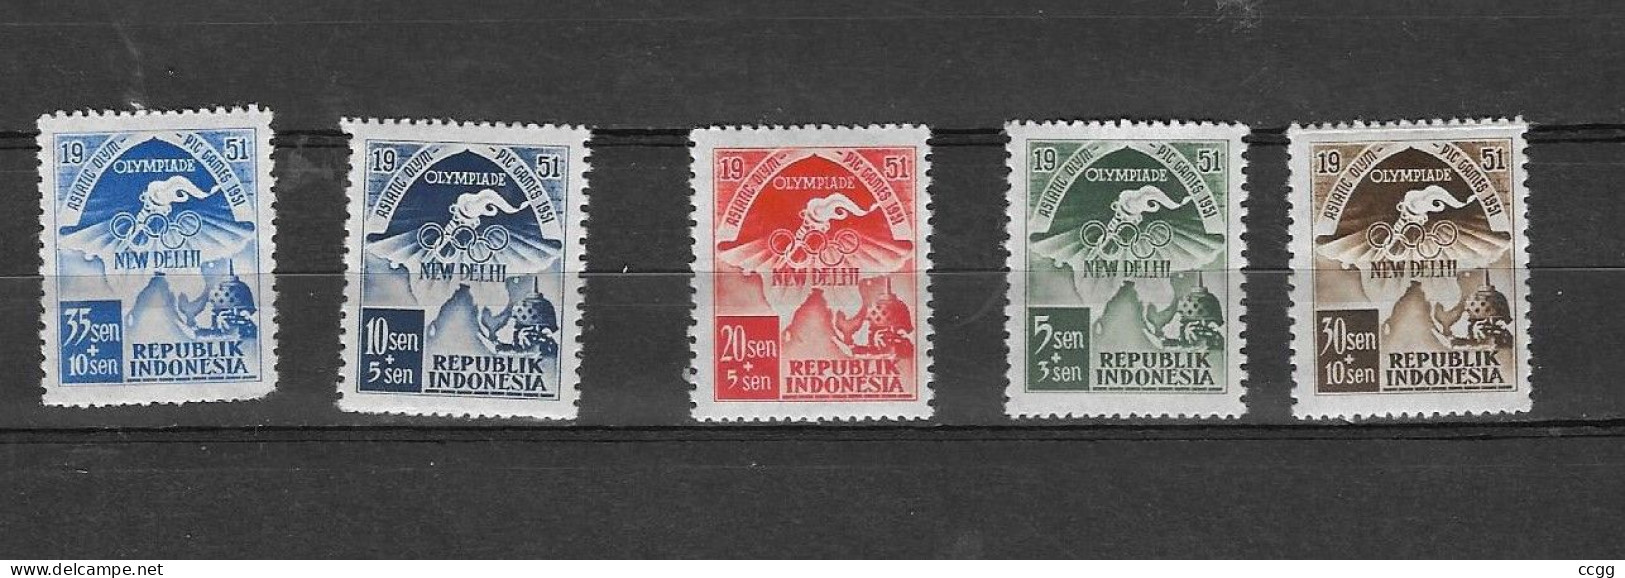 Olympische Spelen  1952 , Indonesie  - Zegels  Postfris - Sommer 1952: Helsinki